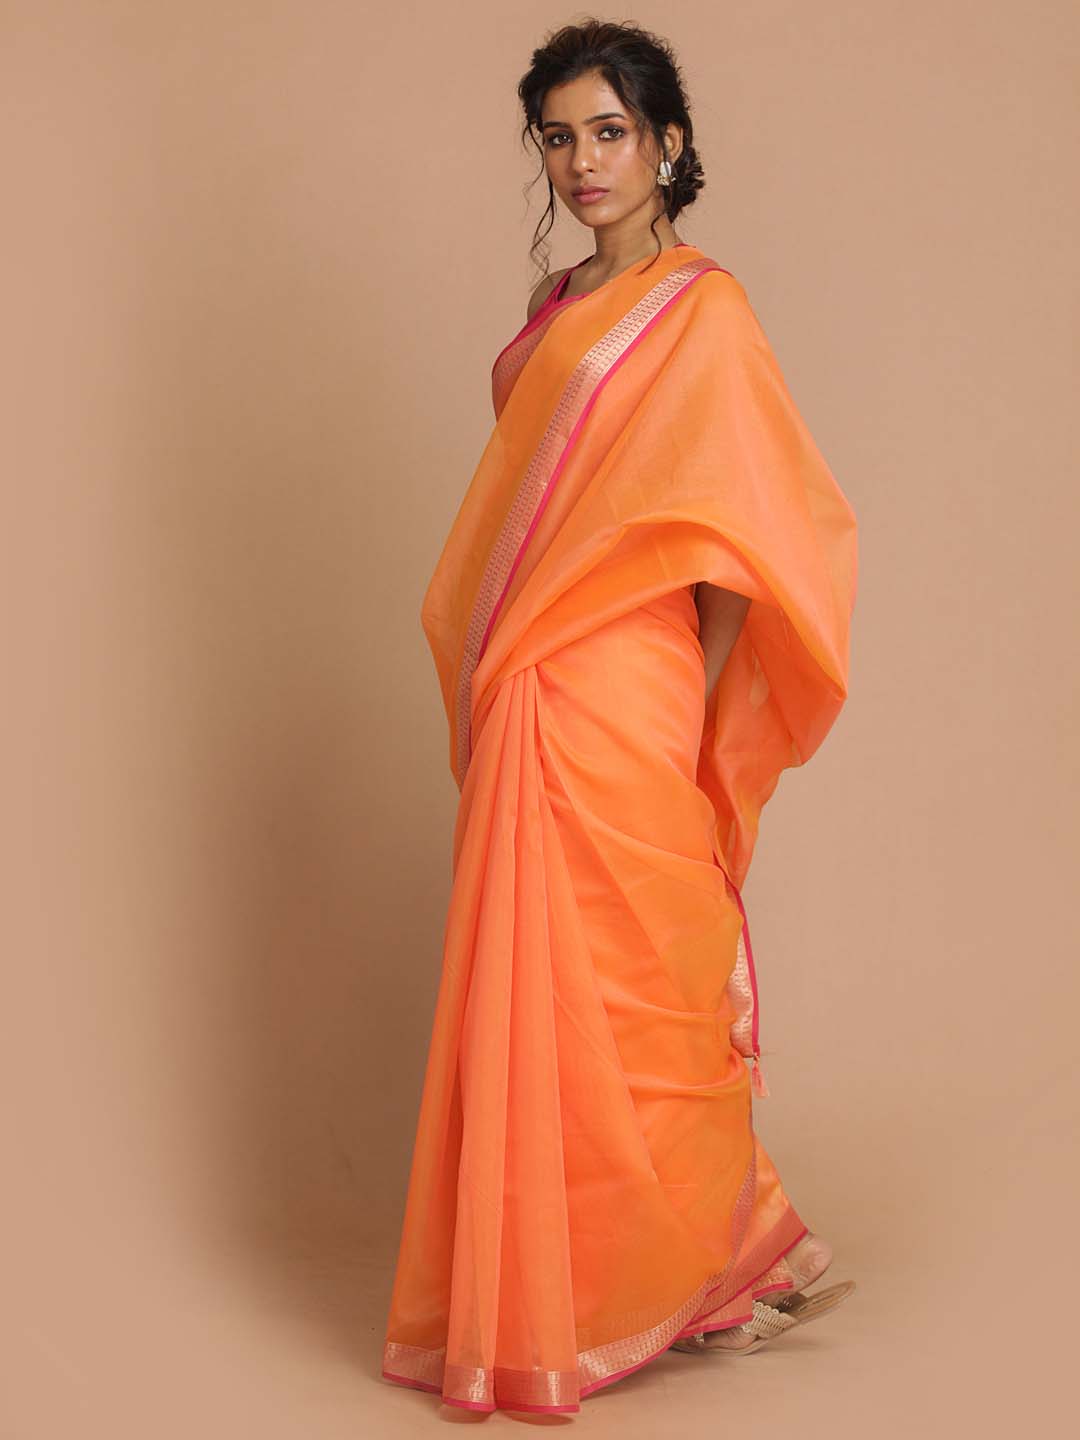 Indethnic Banarasi Orange Solid Daily Wear Saree - View 2